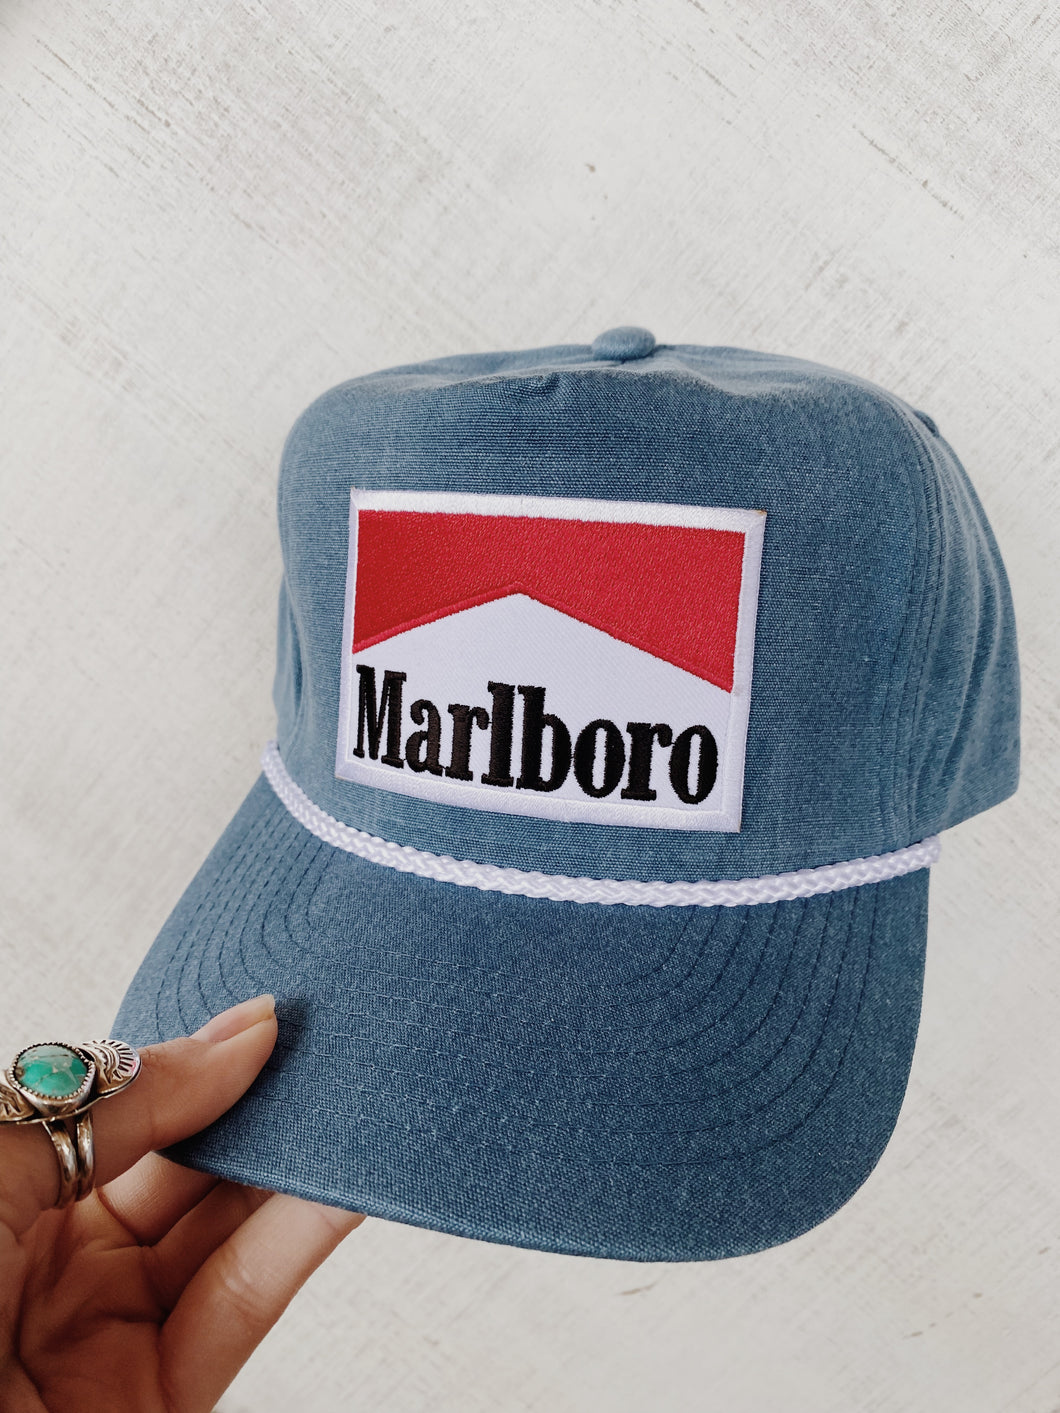 Marlboro Vintage Style Hat